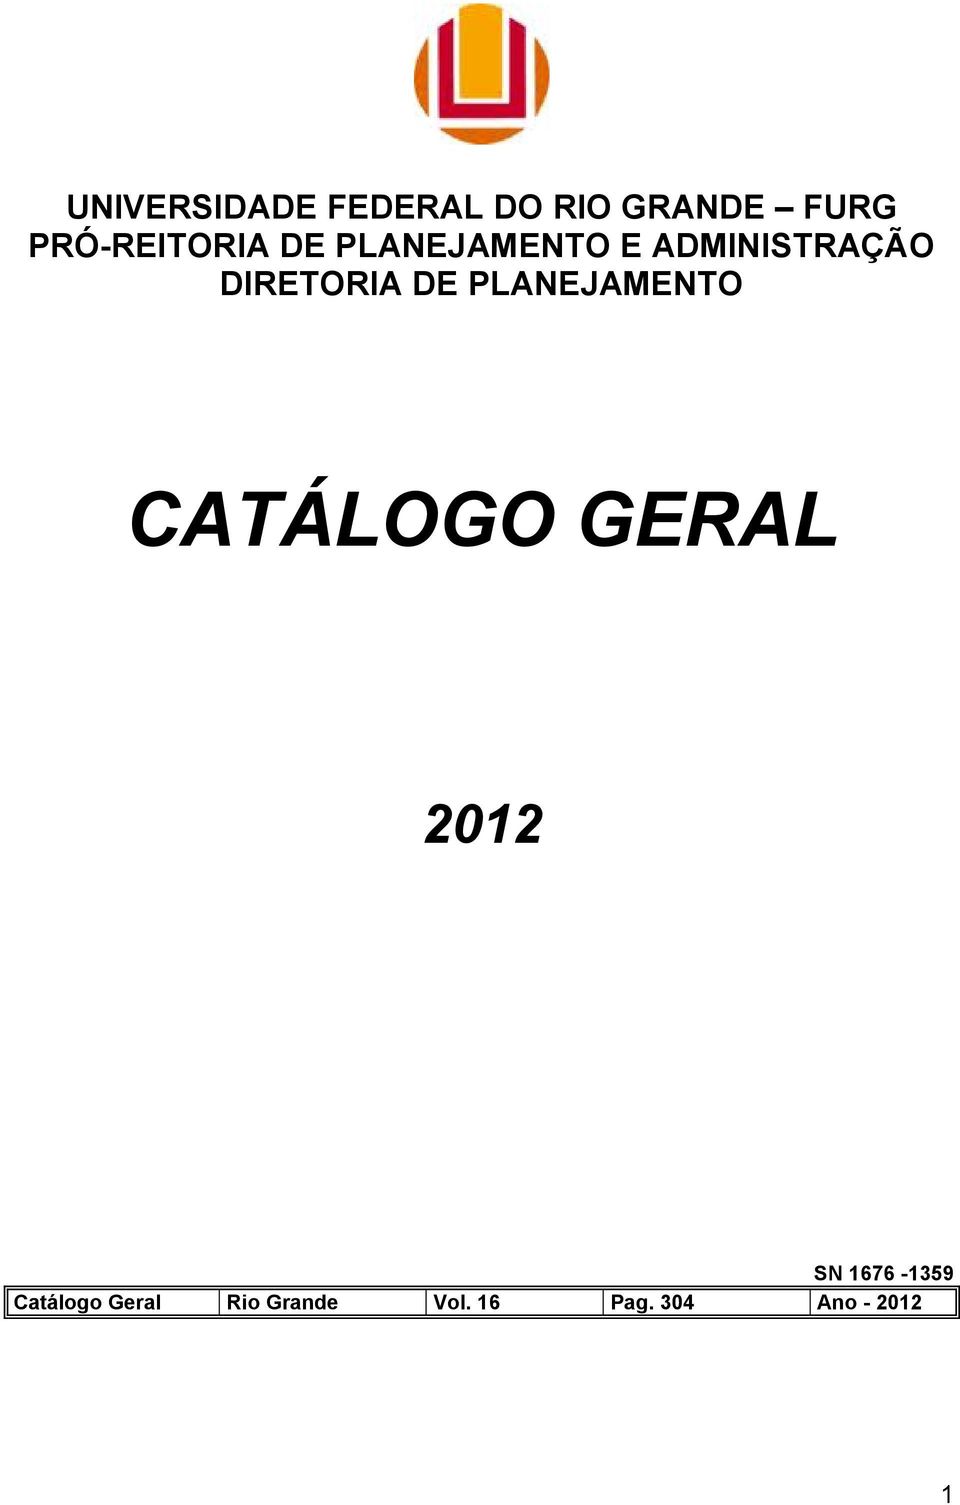 DIRETORIA DE PLANEJAMENTO CATÁLOGO GERAL 2012 SN